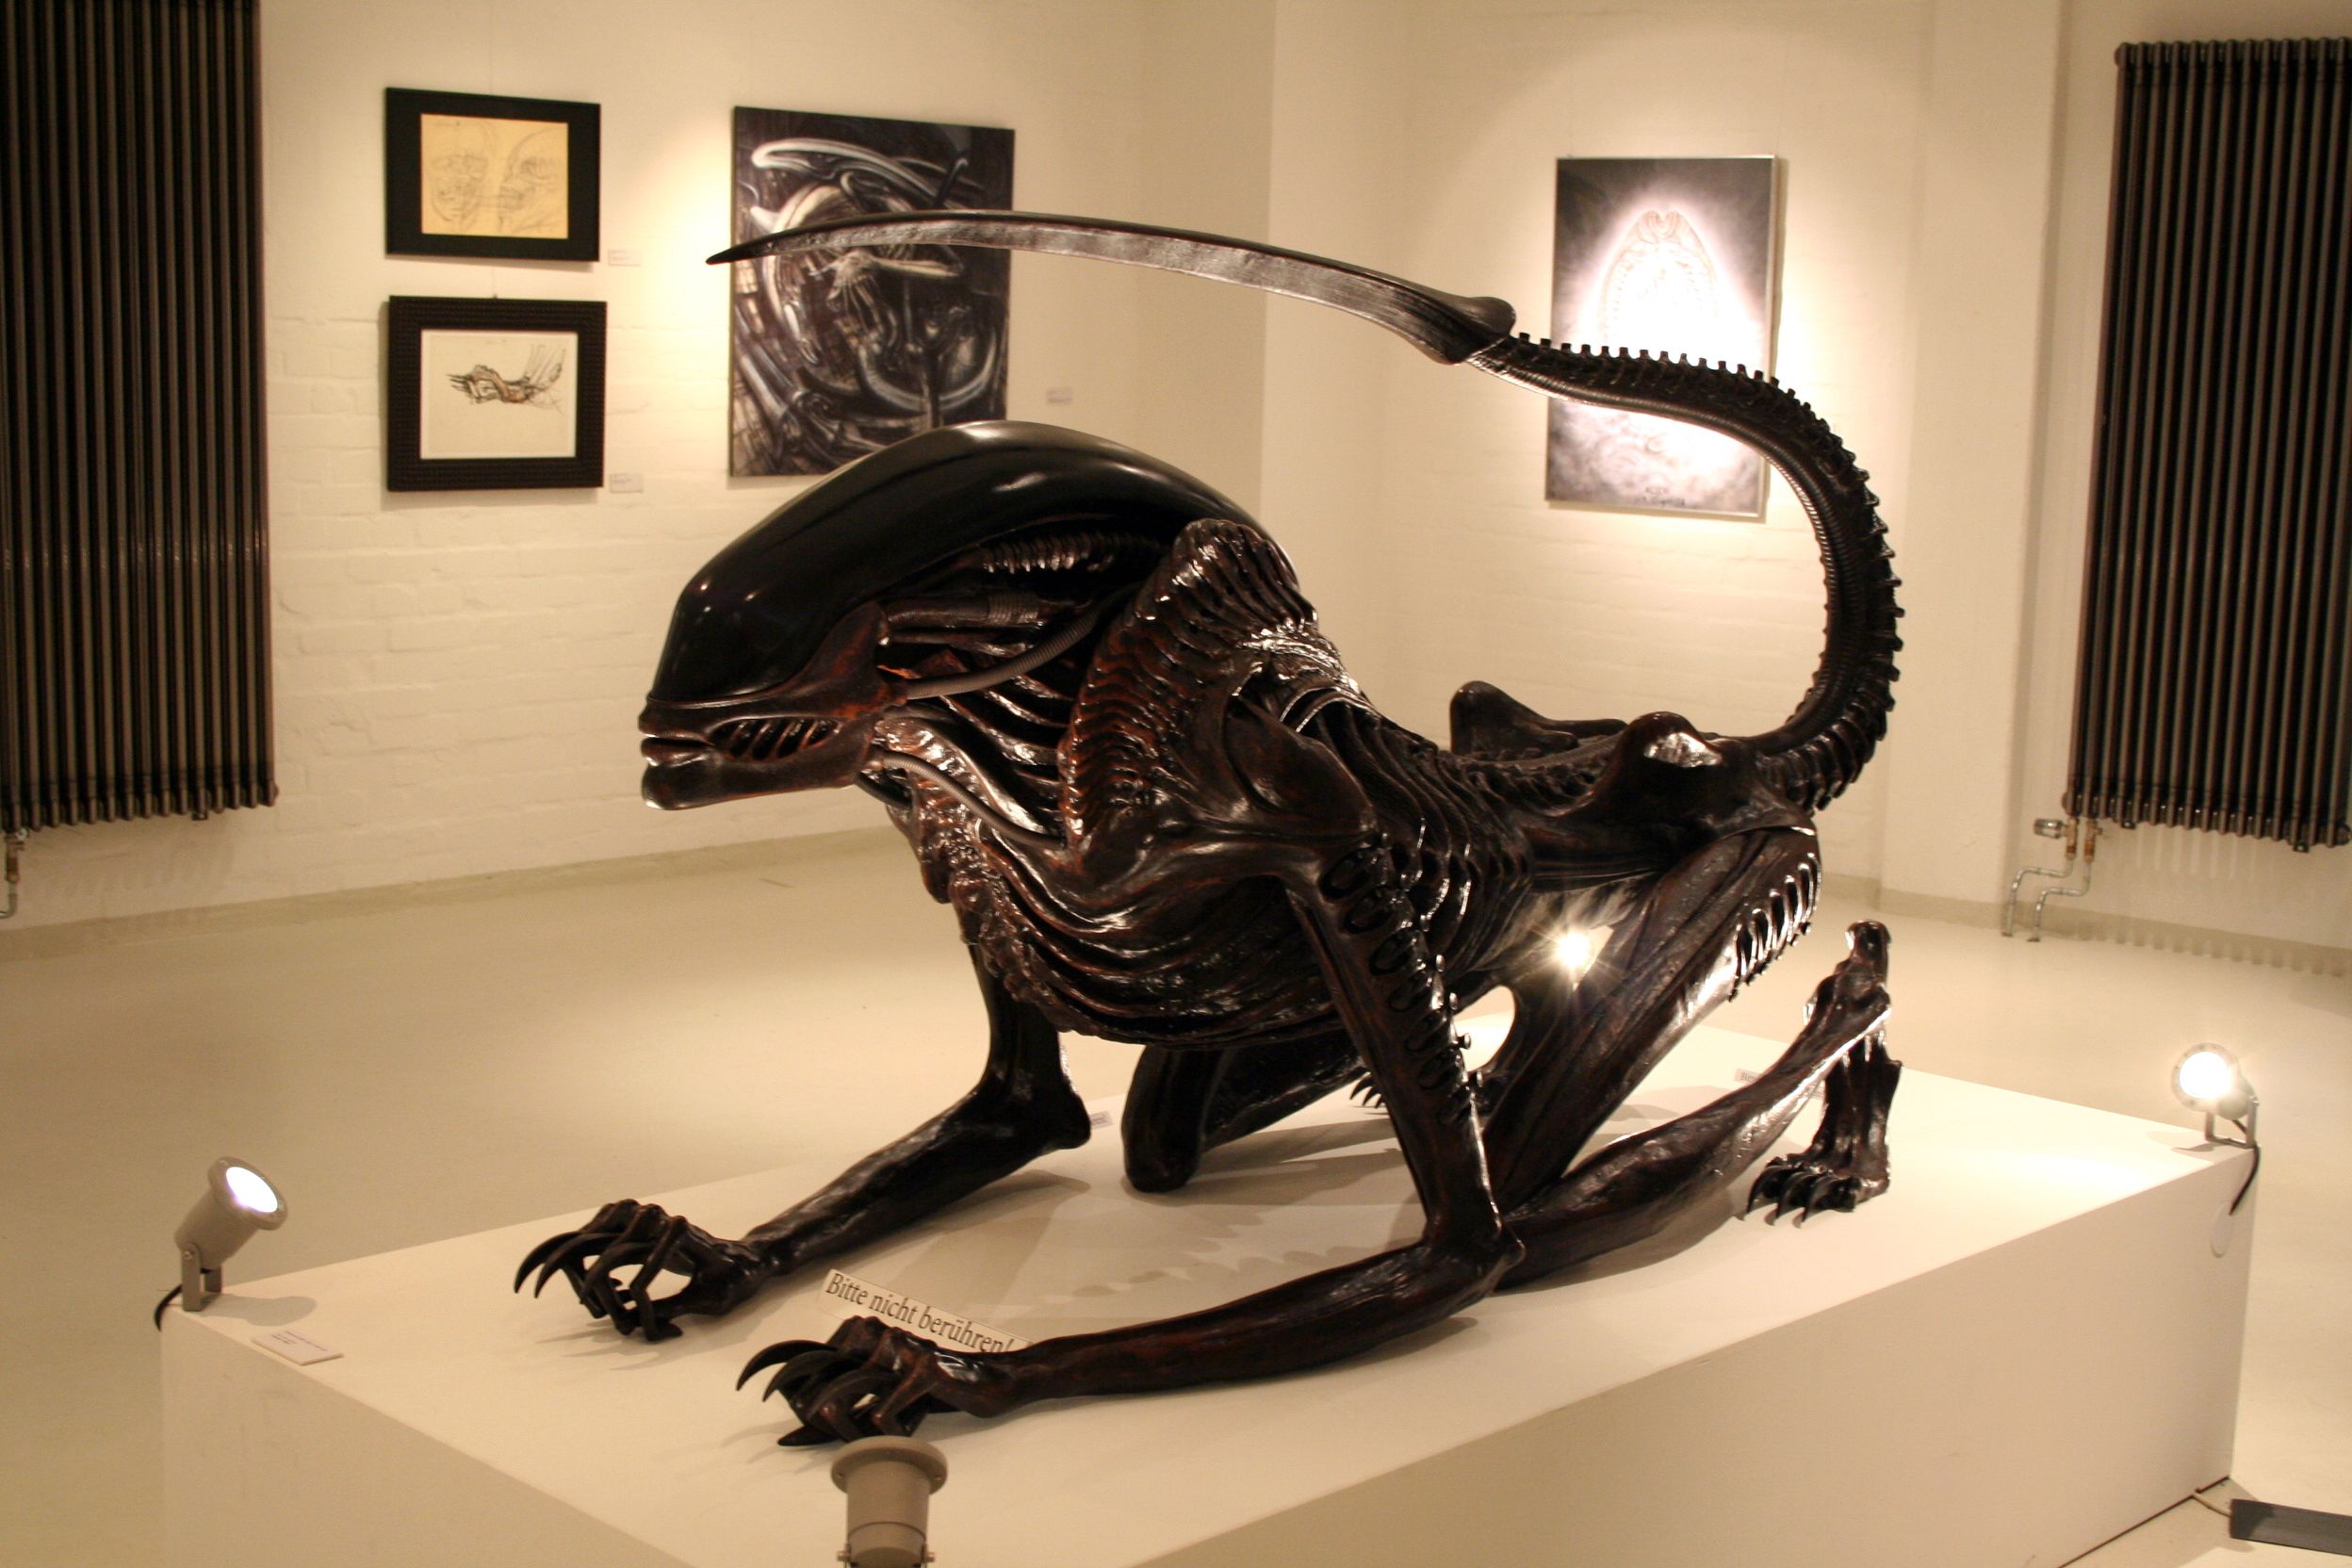 Die ikonische ‘Alien’-Skulptur von H.R. Giger wird als NFTs fraktioniert